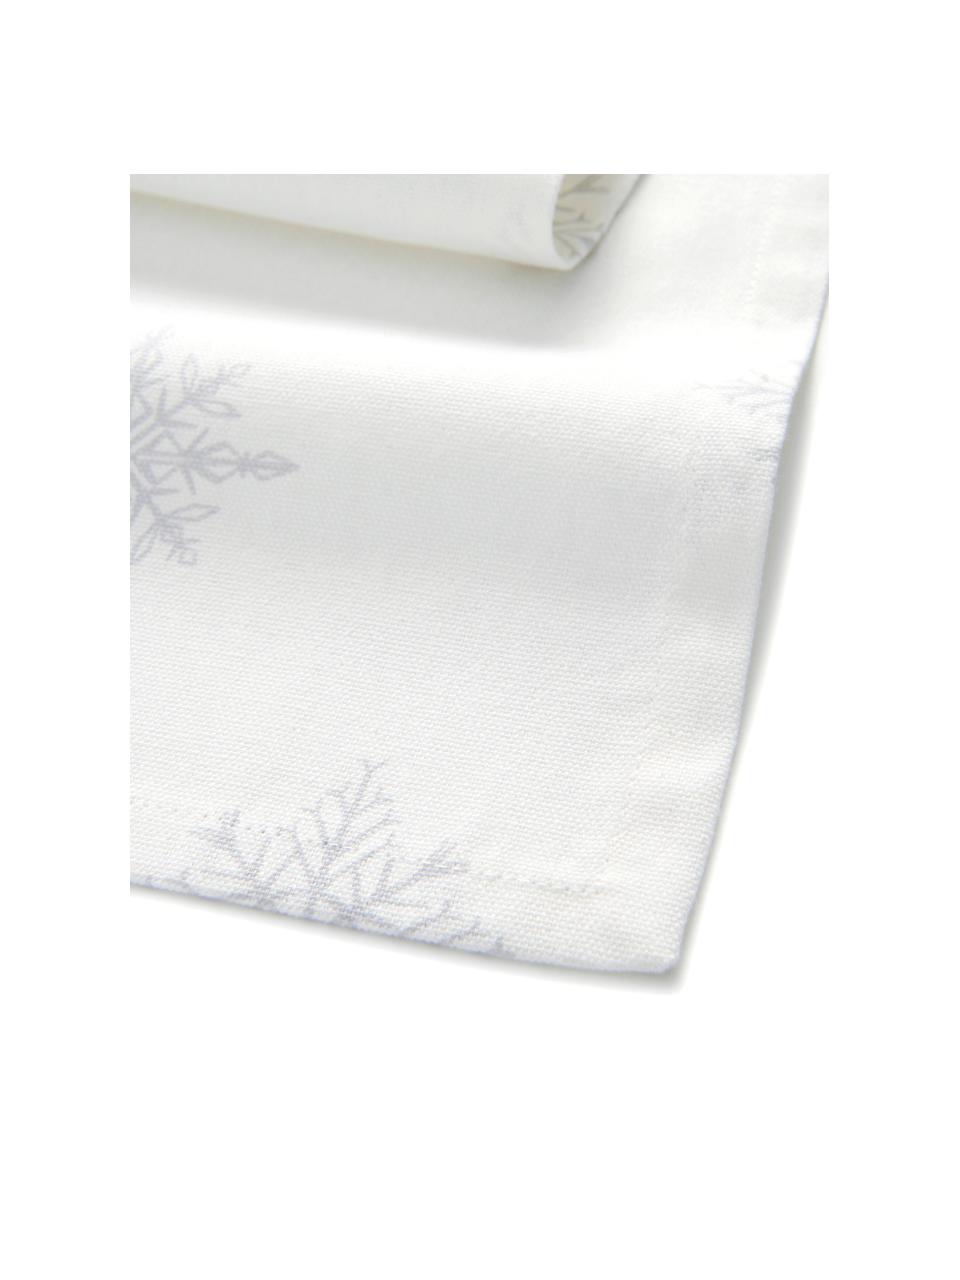 Runner Snow, 100% cotone, da coltivazione sostenibile di cotone, Bianco crema, grigio chiaro, Larg. 40 x Lung. 140 cm